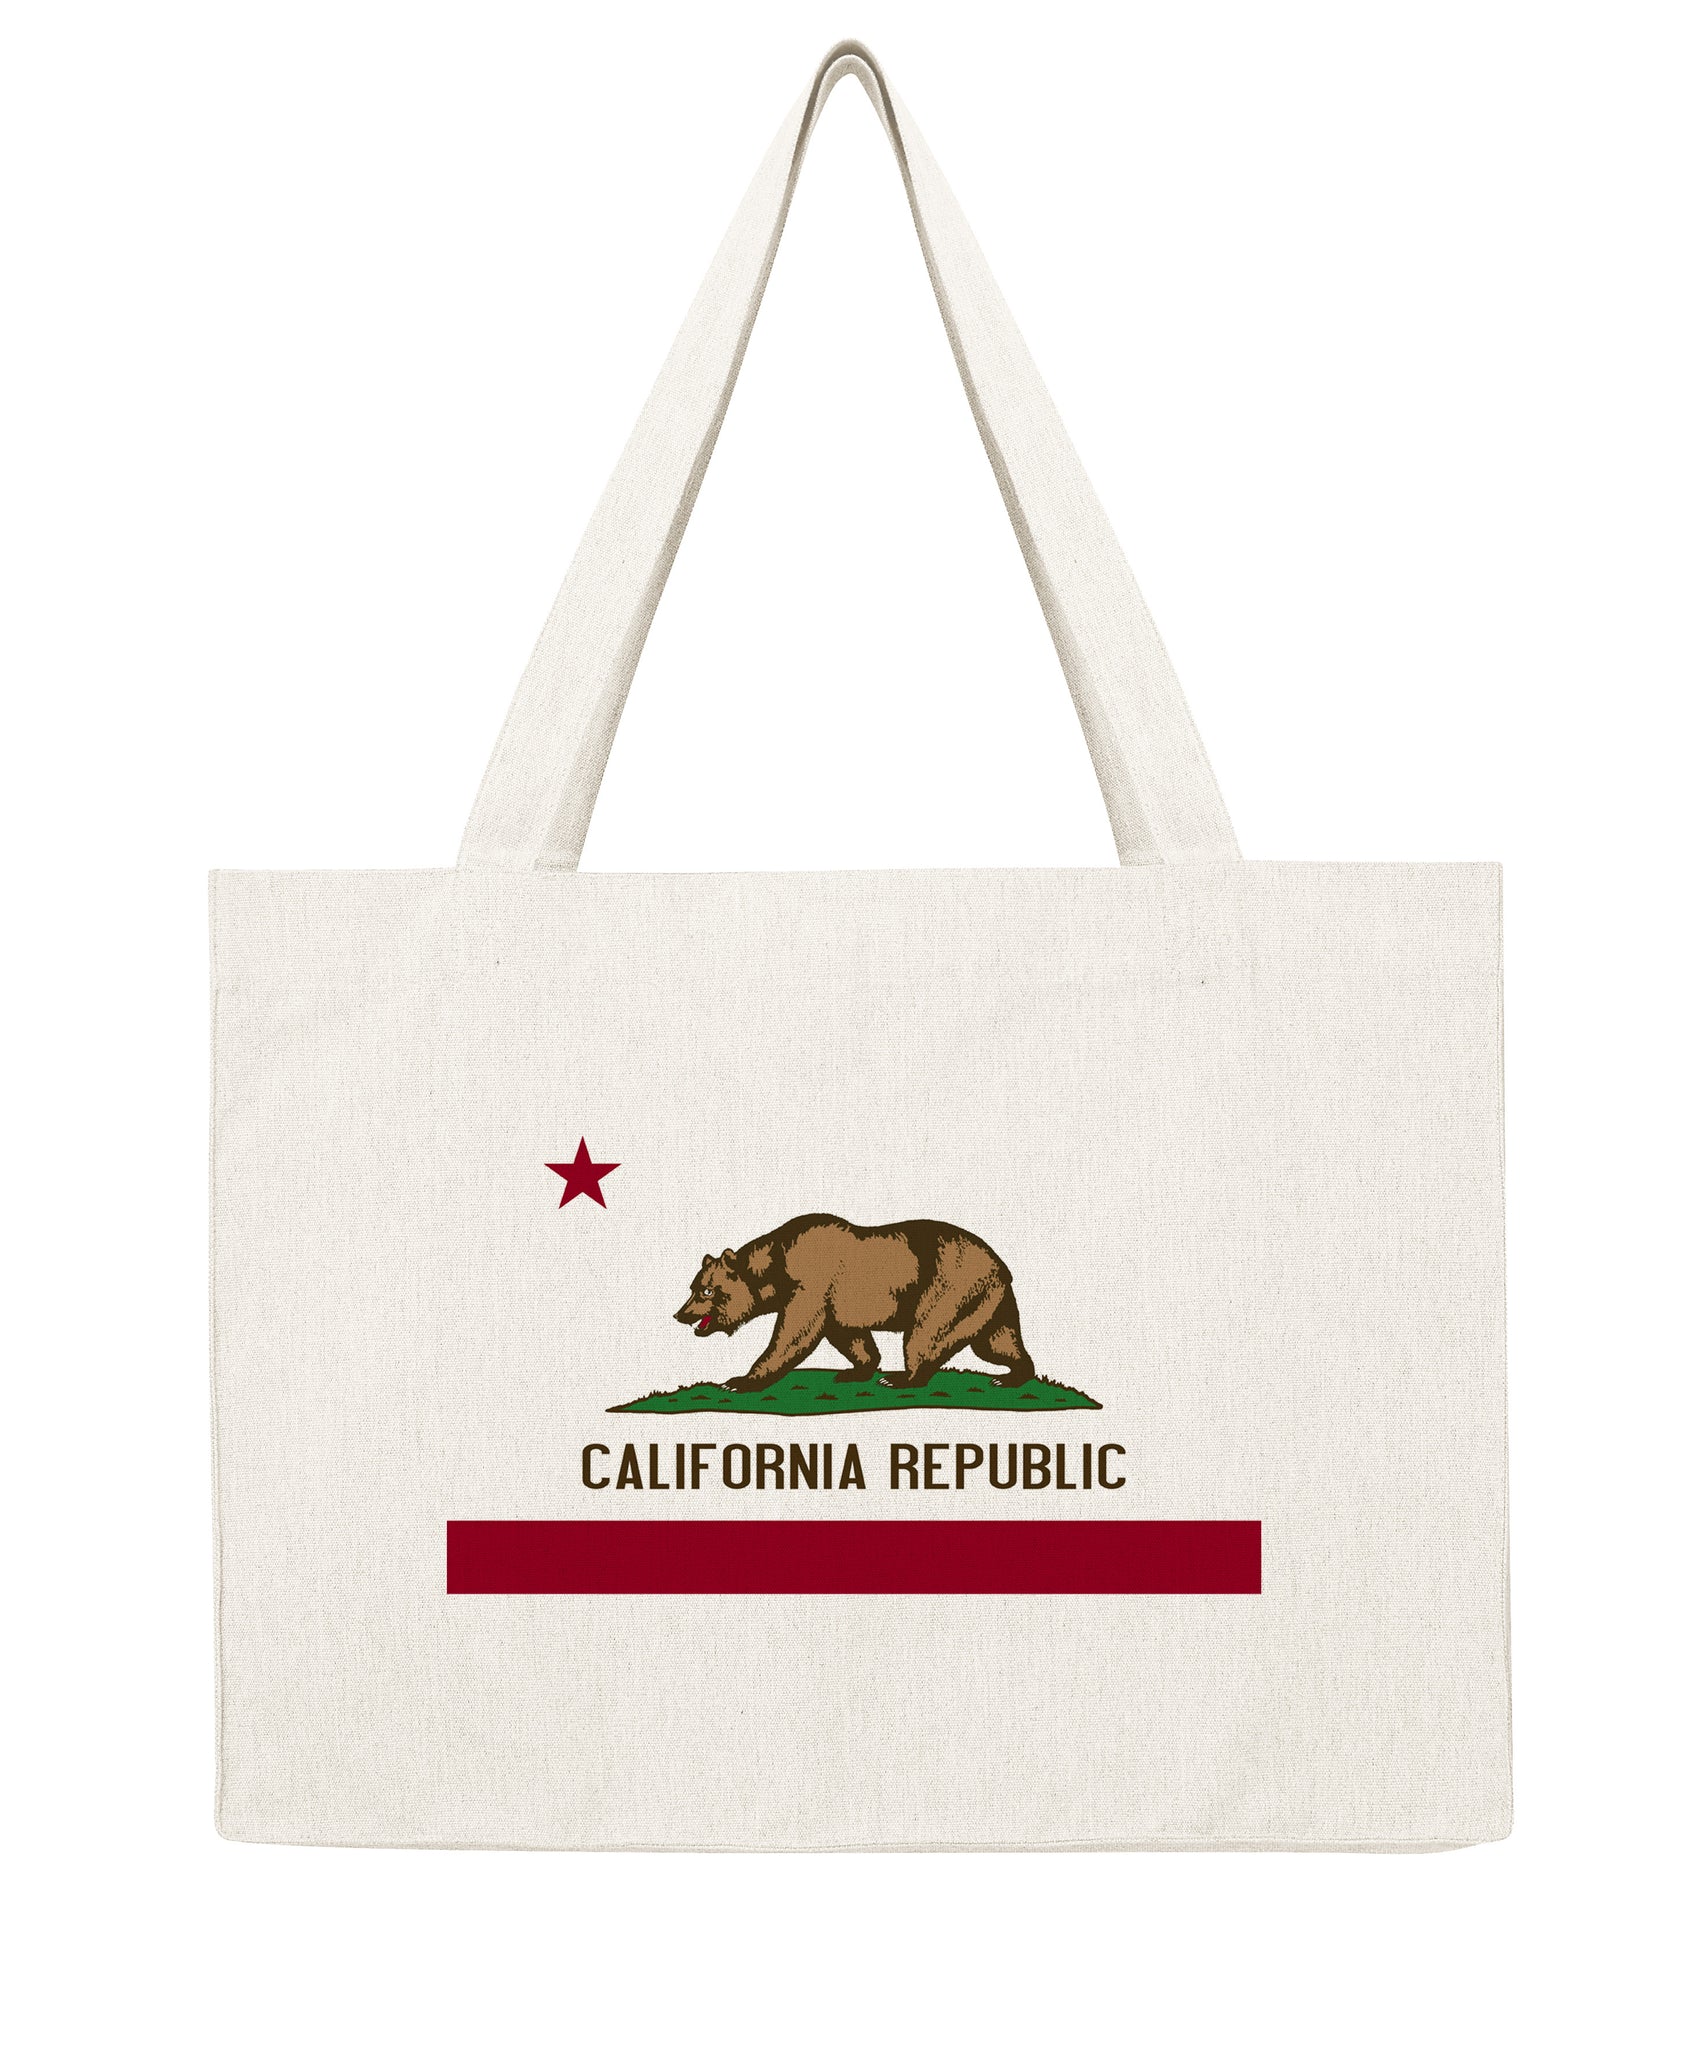 California Republic - Shopping bag-Sacs-Atelier Amelot